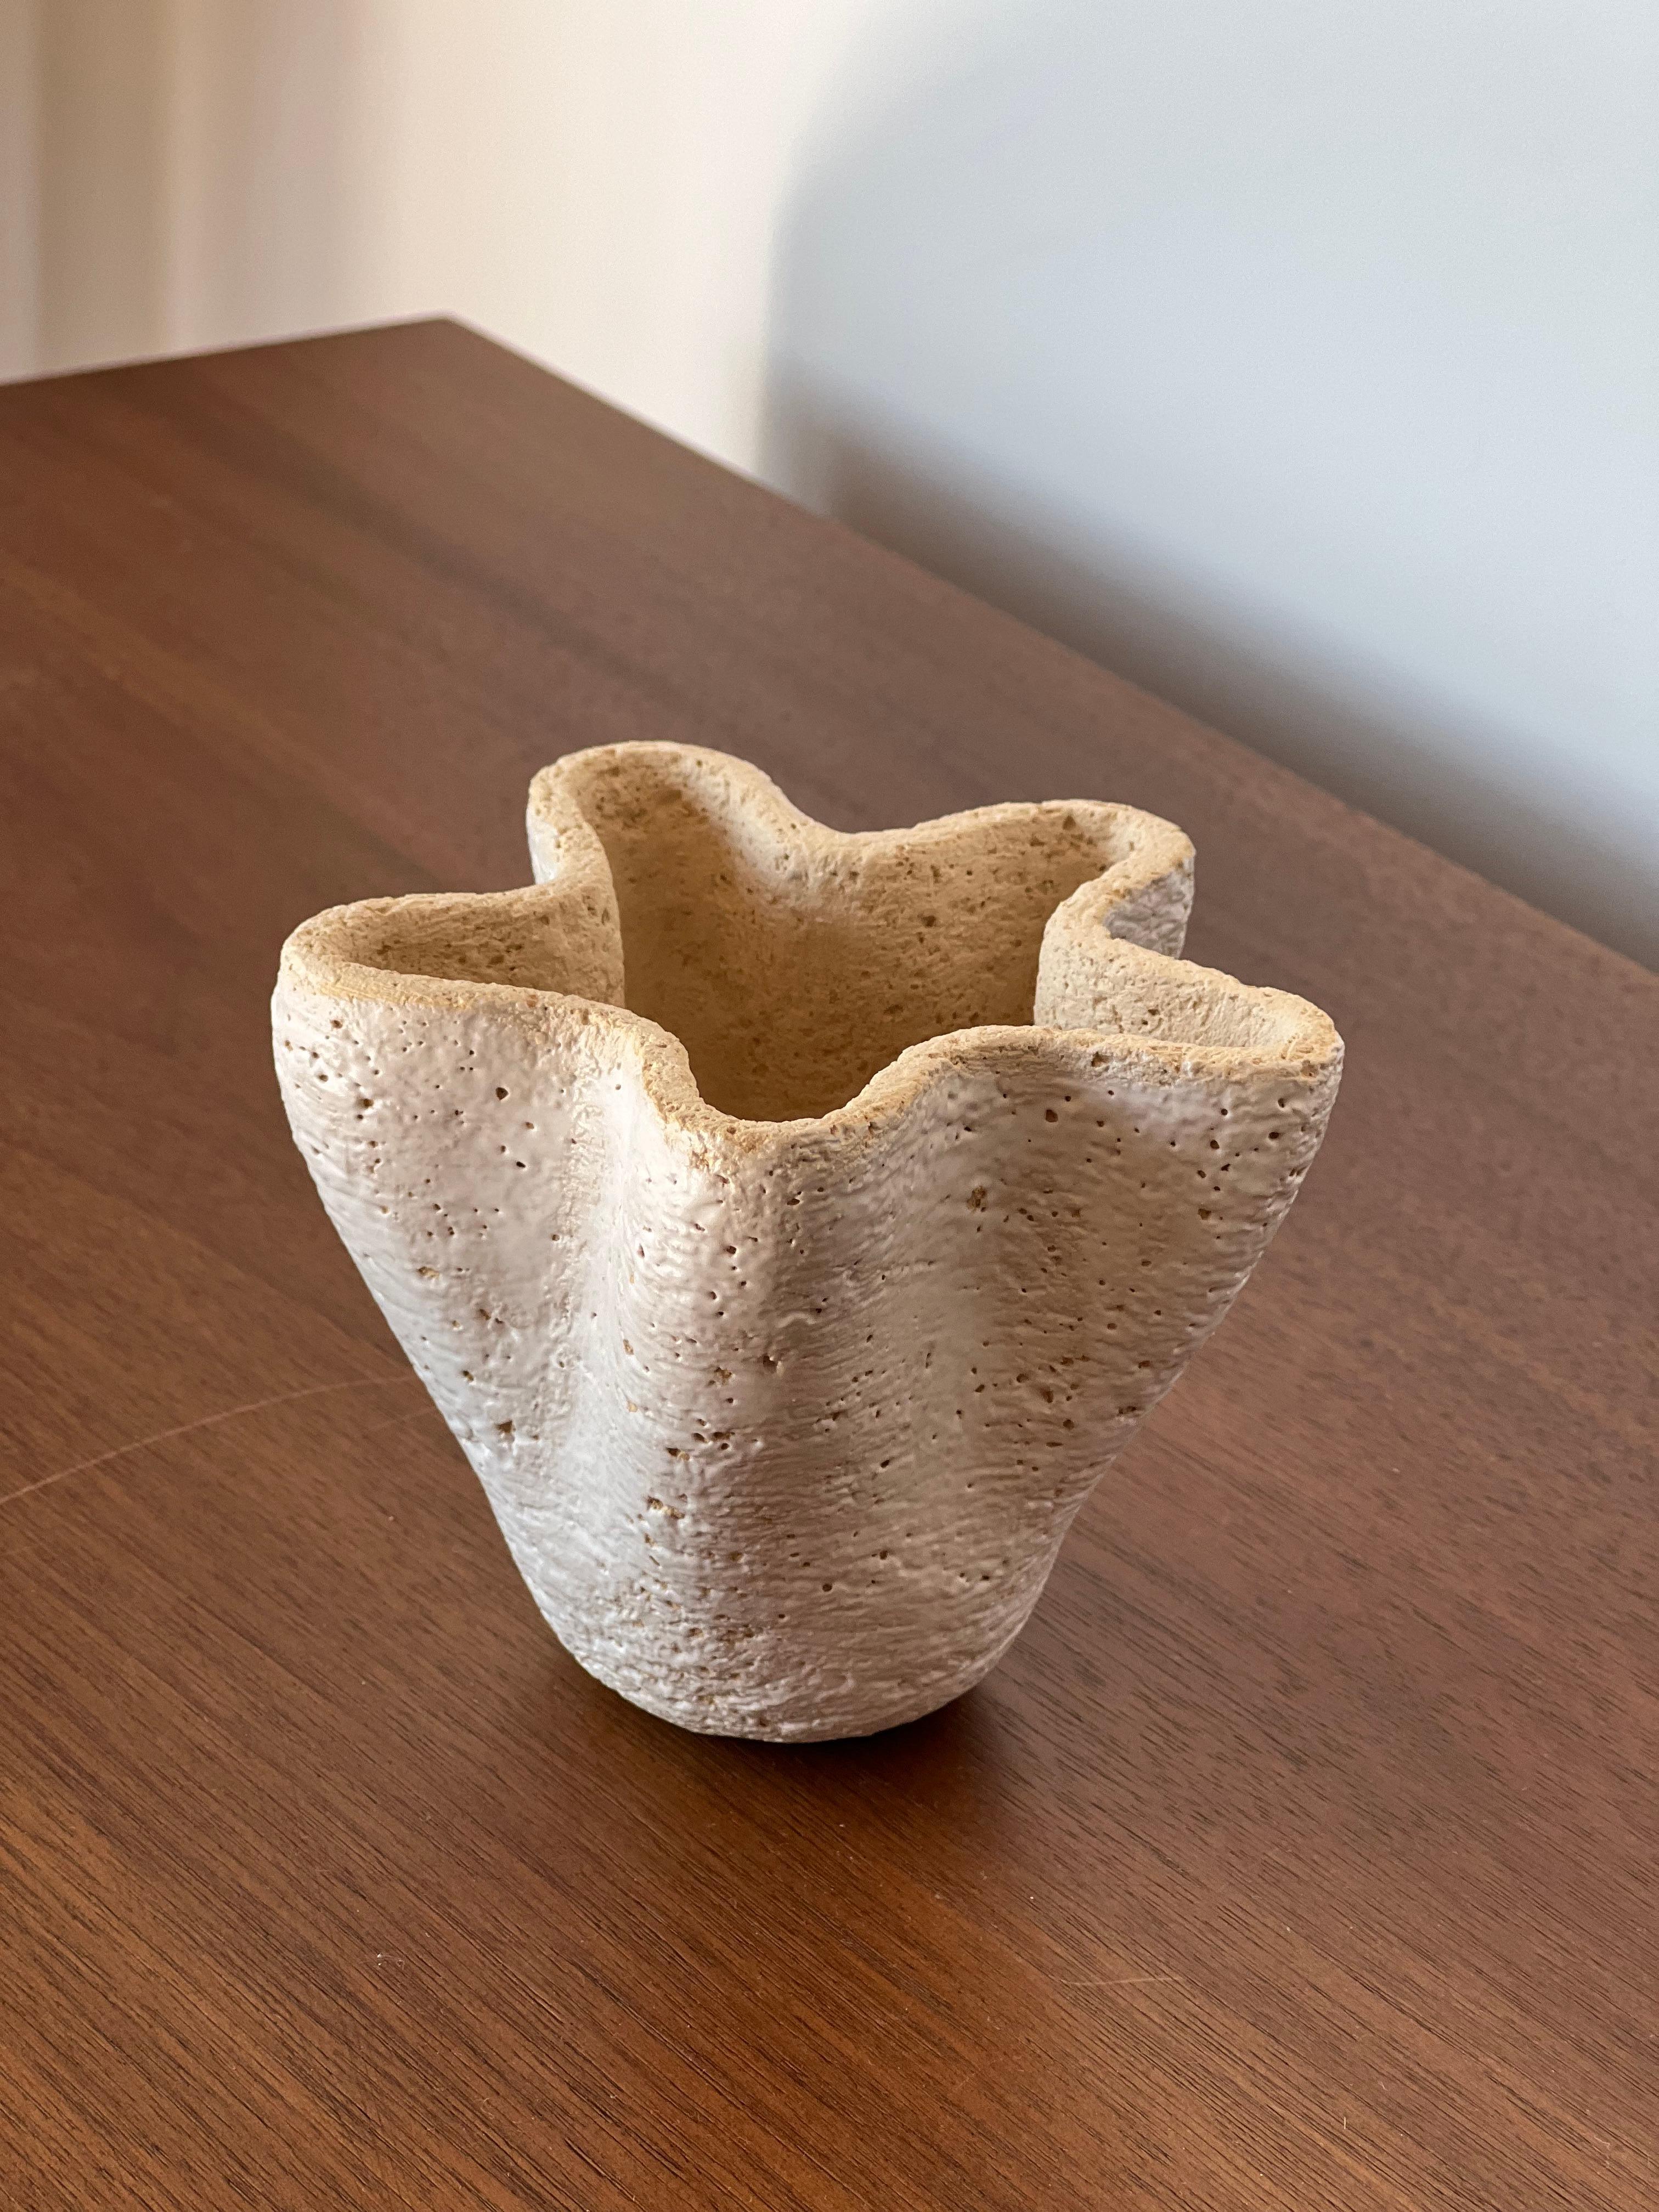 Vase anatolien 6 de Güler Elçi
Dimensions : L 11,4 x P 11,4 x H 12,7 cm : L 11,4 x P 11,4 x H 12,7 cm.
Matériaux : Grès Céramique.

Güler Elçi est une artiste céramiste basée à Istanbul. À la lumière de sa carrière d'ingénieur, elle considère la